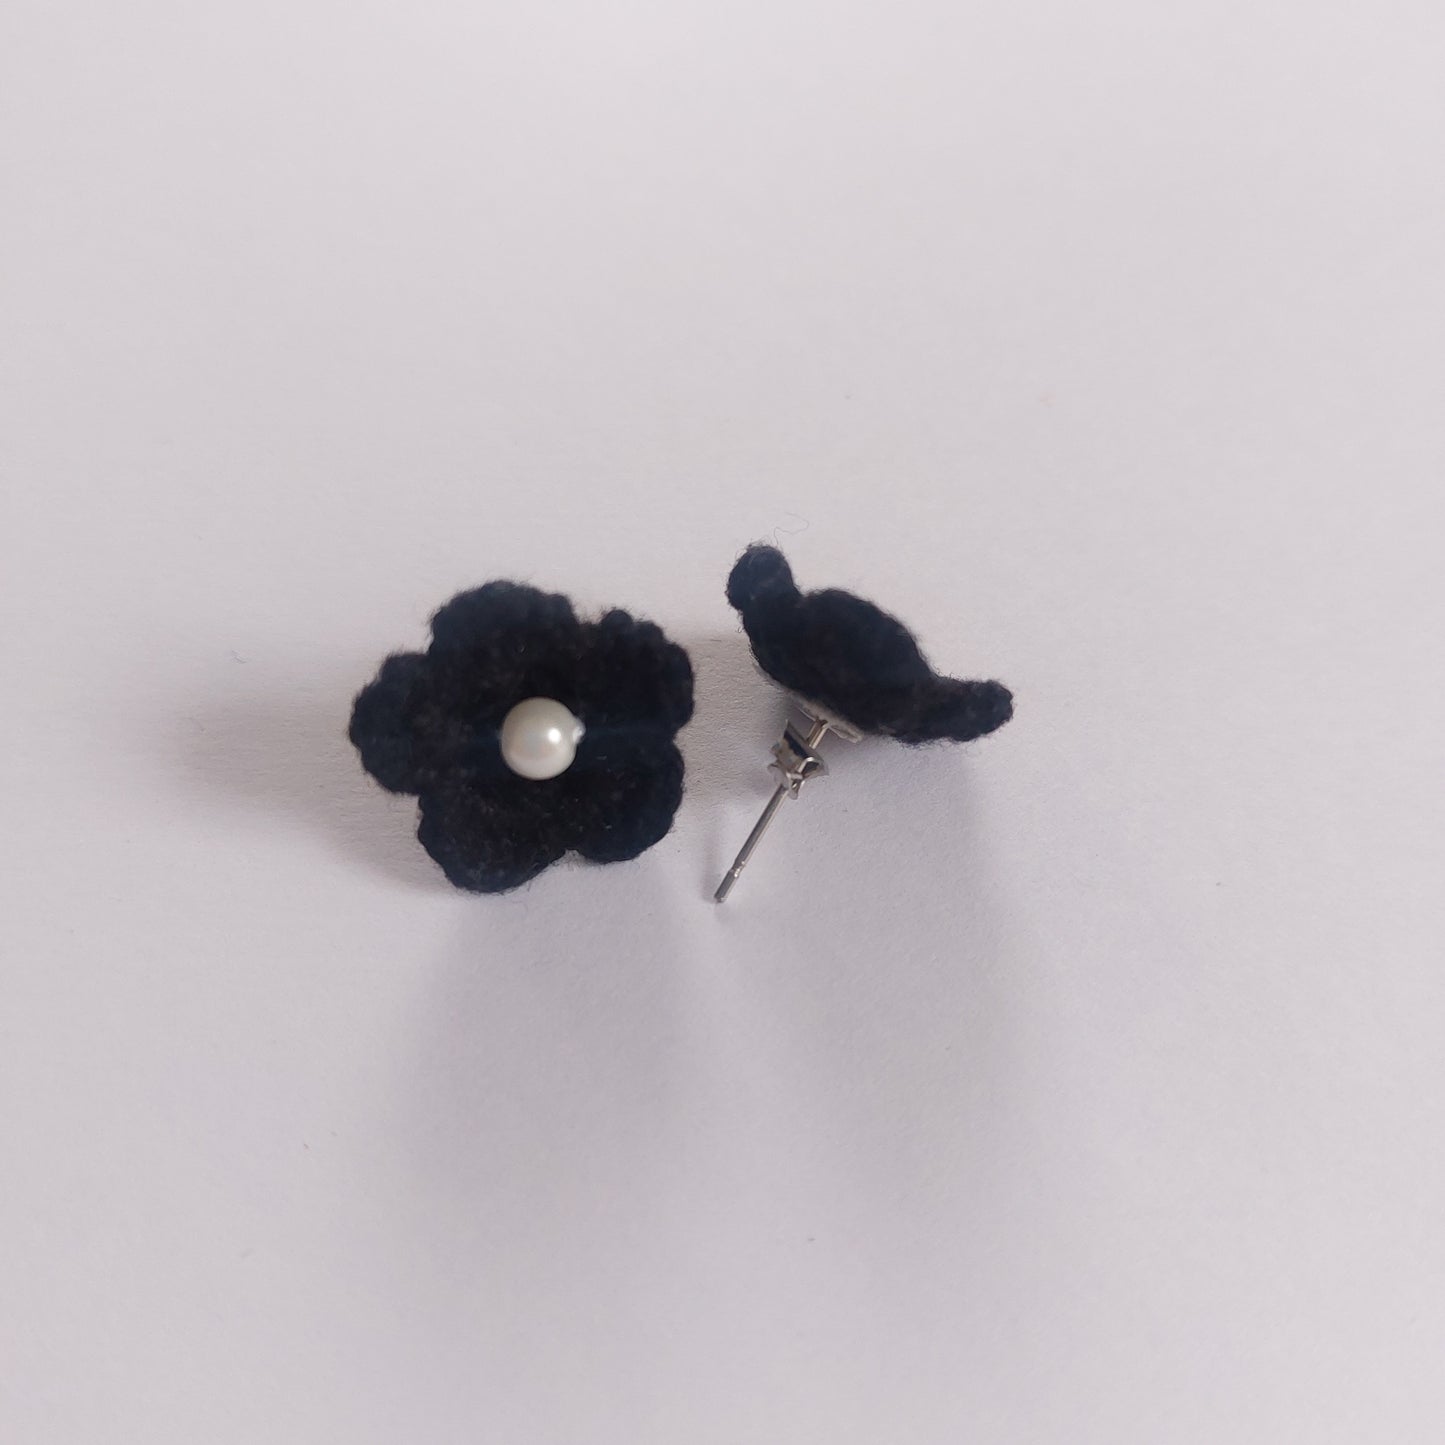 Crochet black small flowers earrings